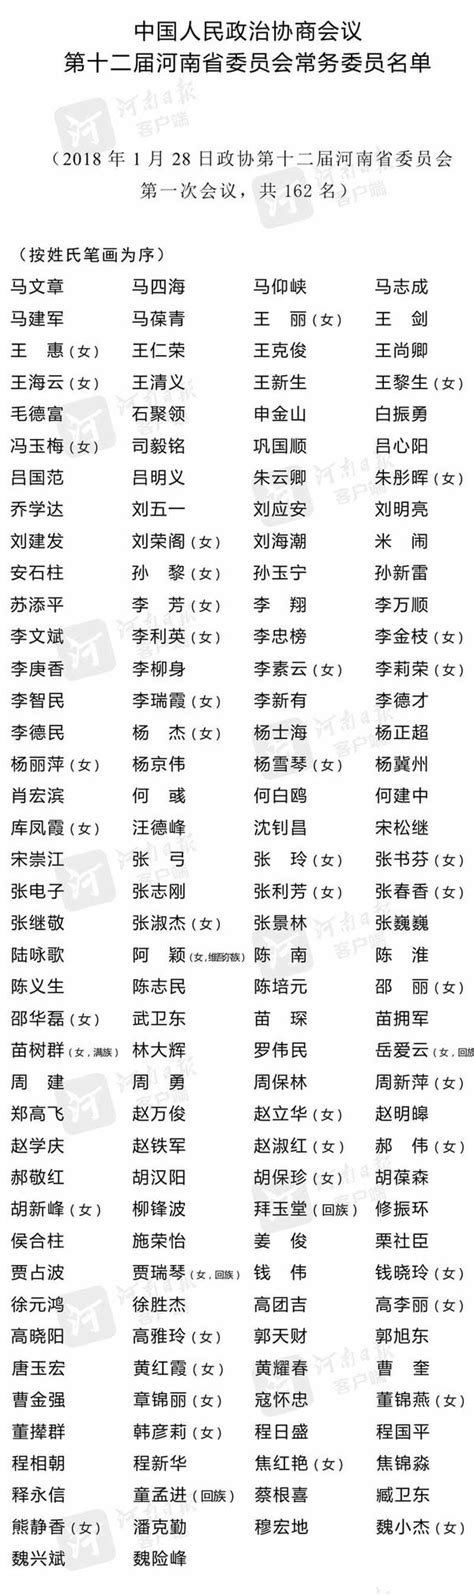 中国人民政治协商会议第十二届河南省委员会常务委员名单-大河网